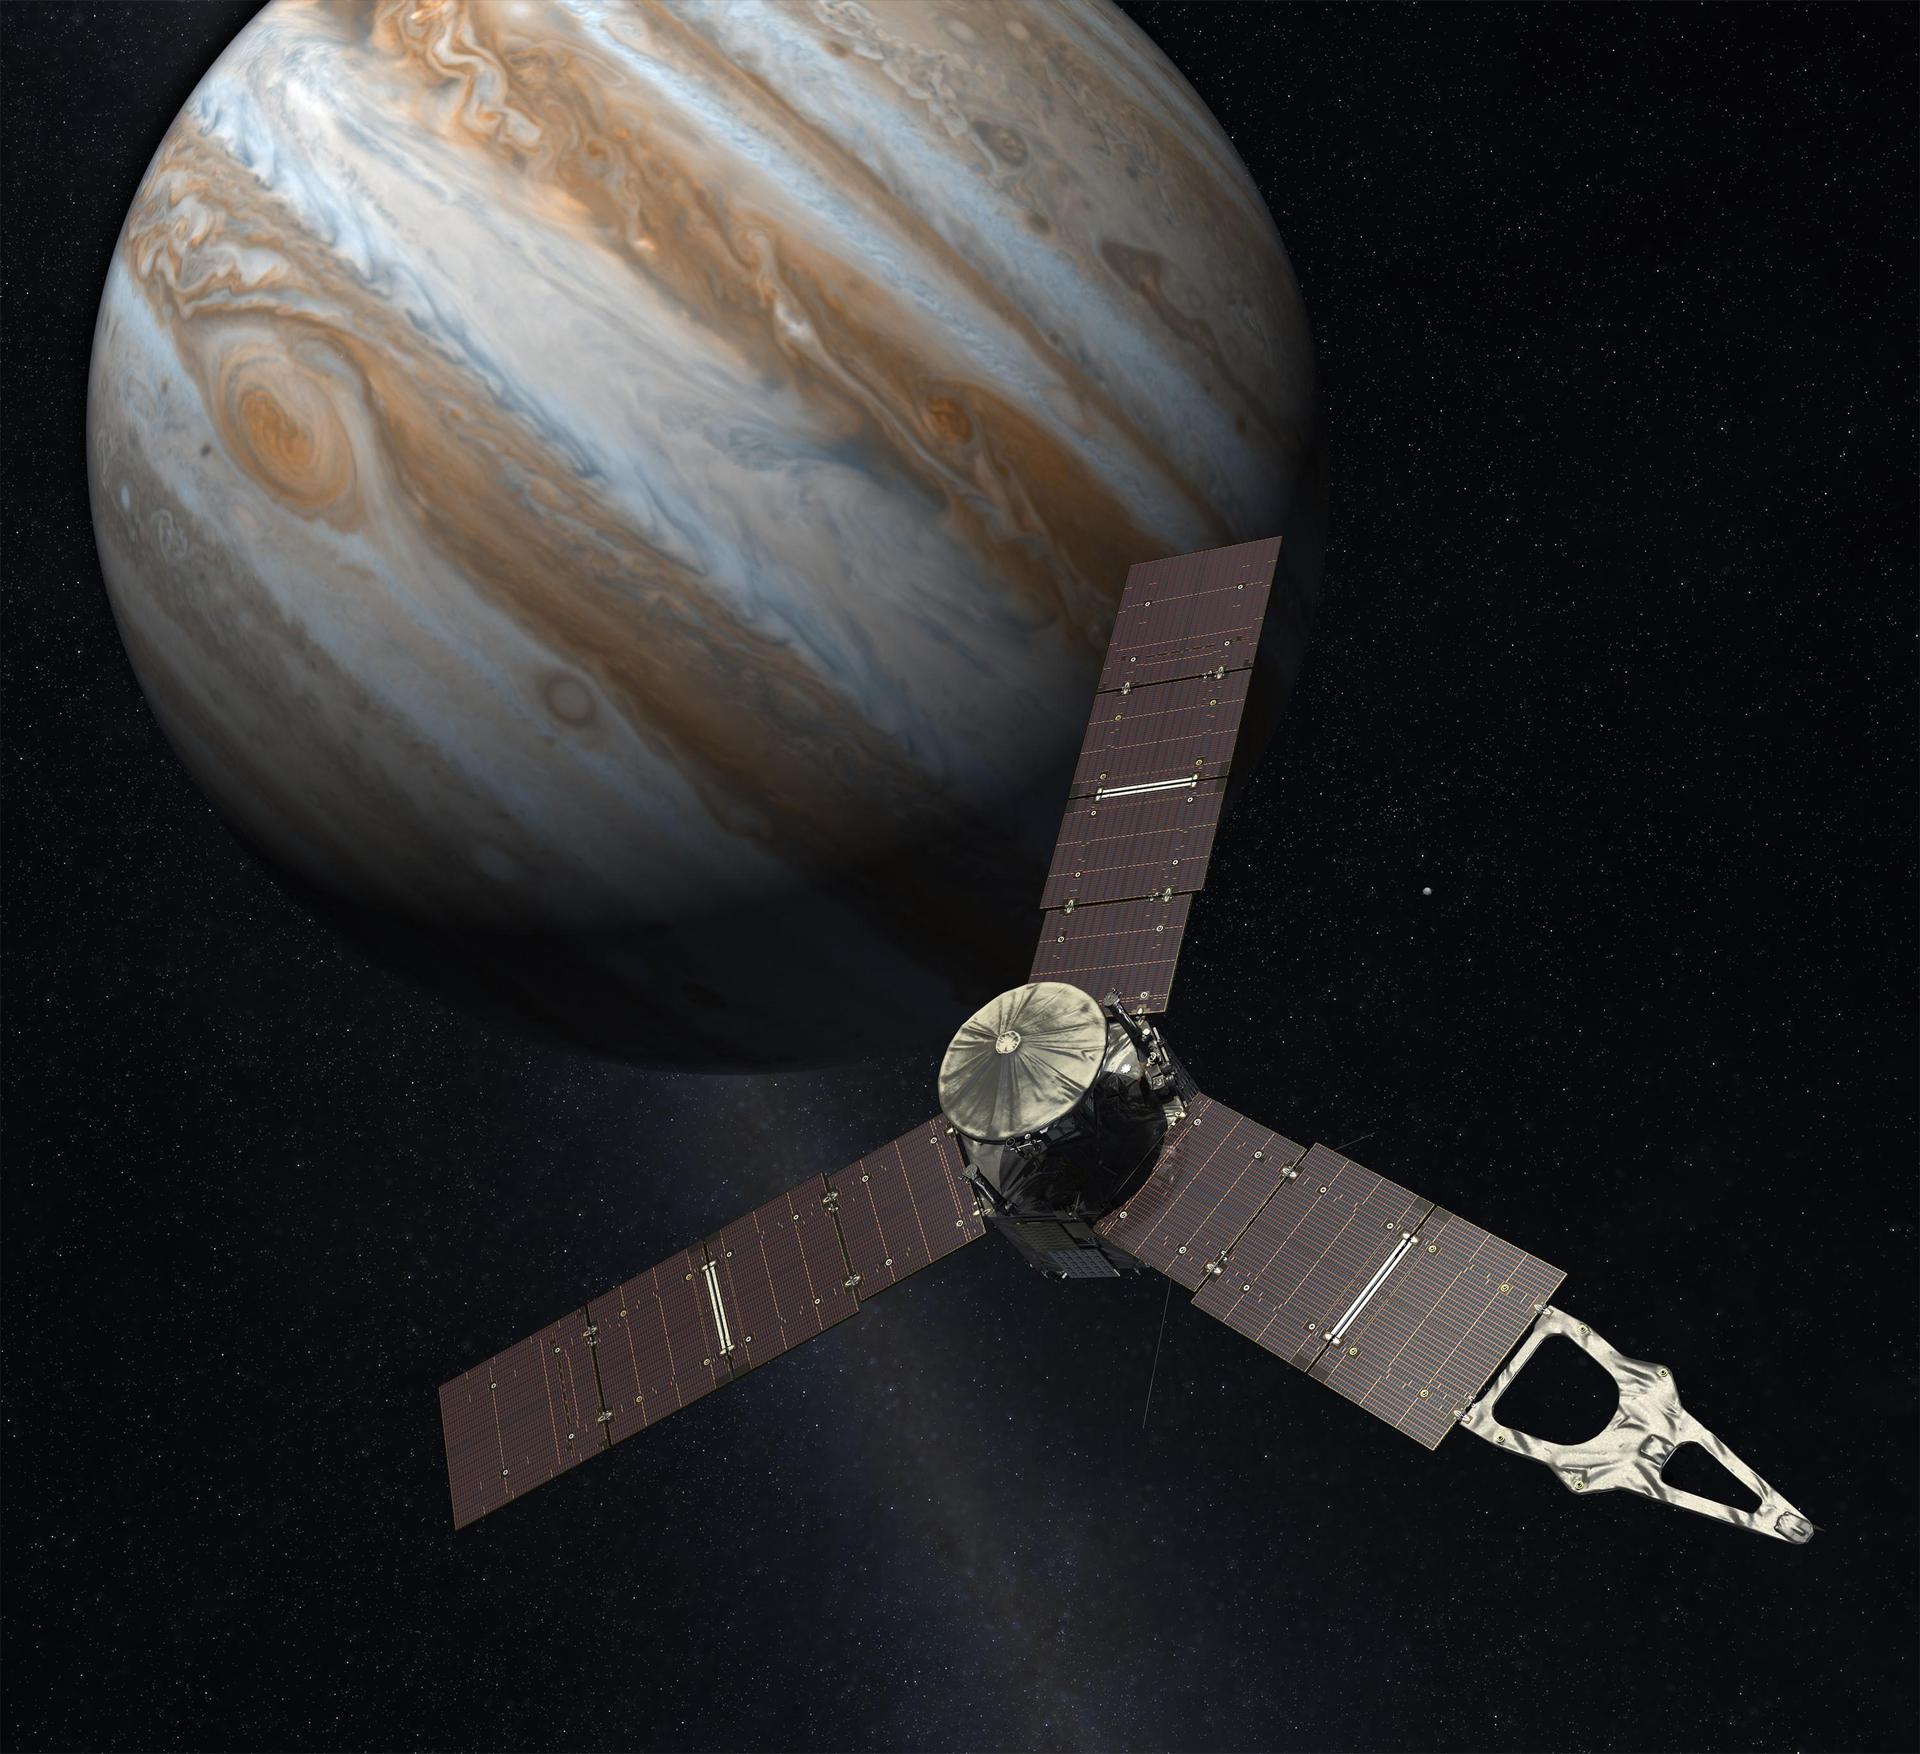 An artist’s rendering of Juno approaching Jupiter. Credit: NASA/JPL-Caltech